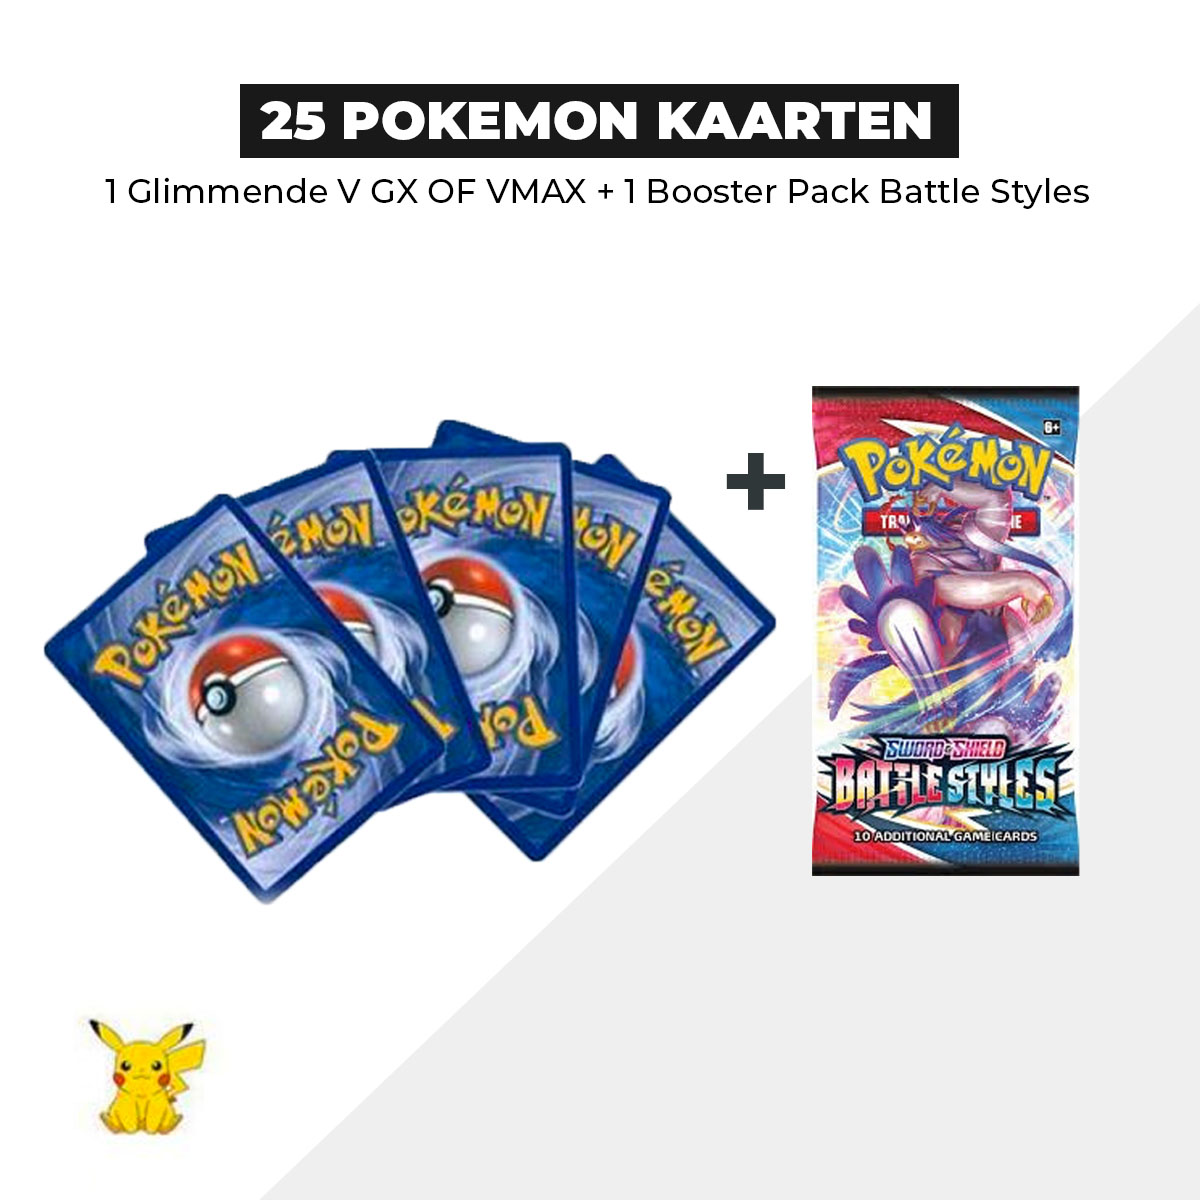 25 Pokémon Kaarten Bundel + 1 Battle Styles Booster pack